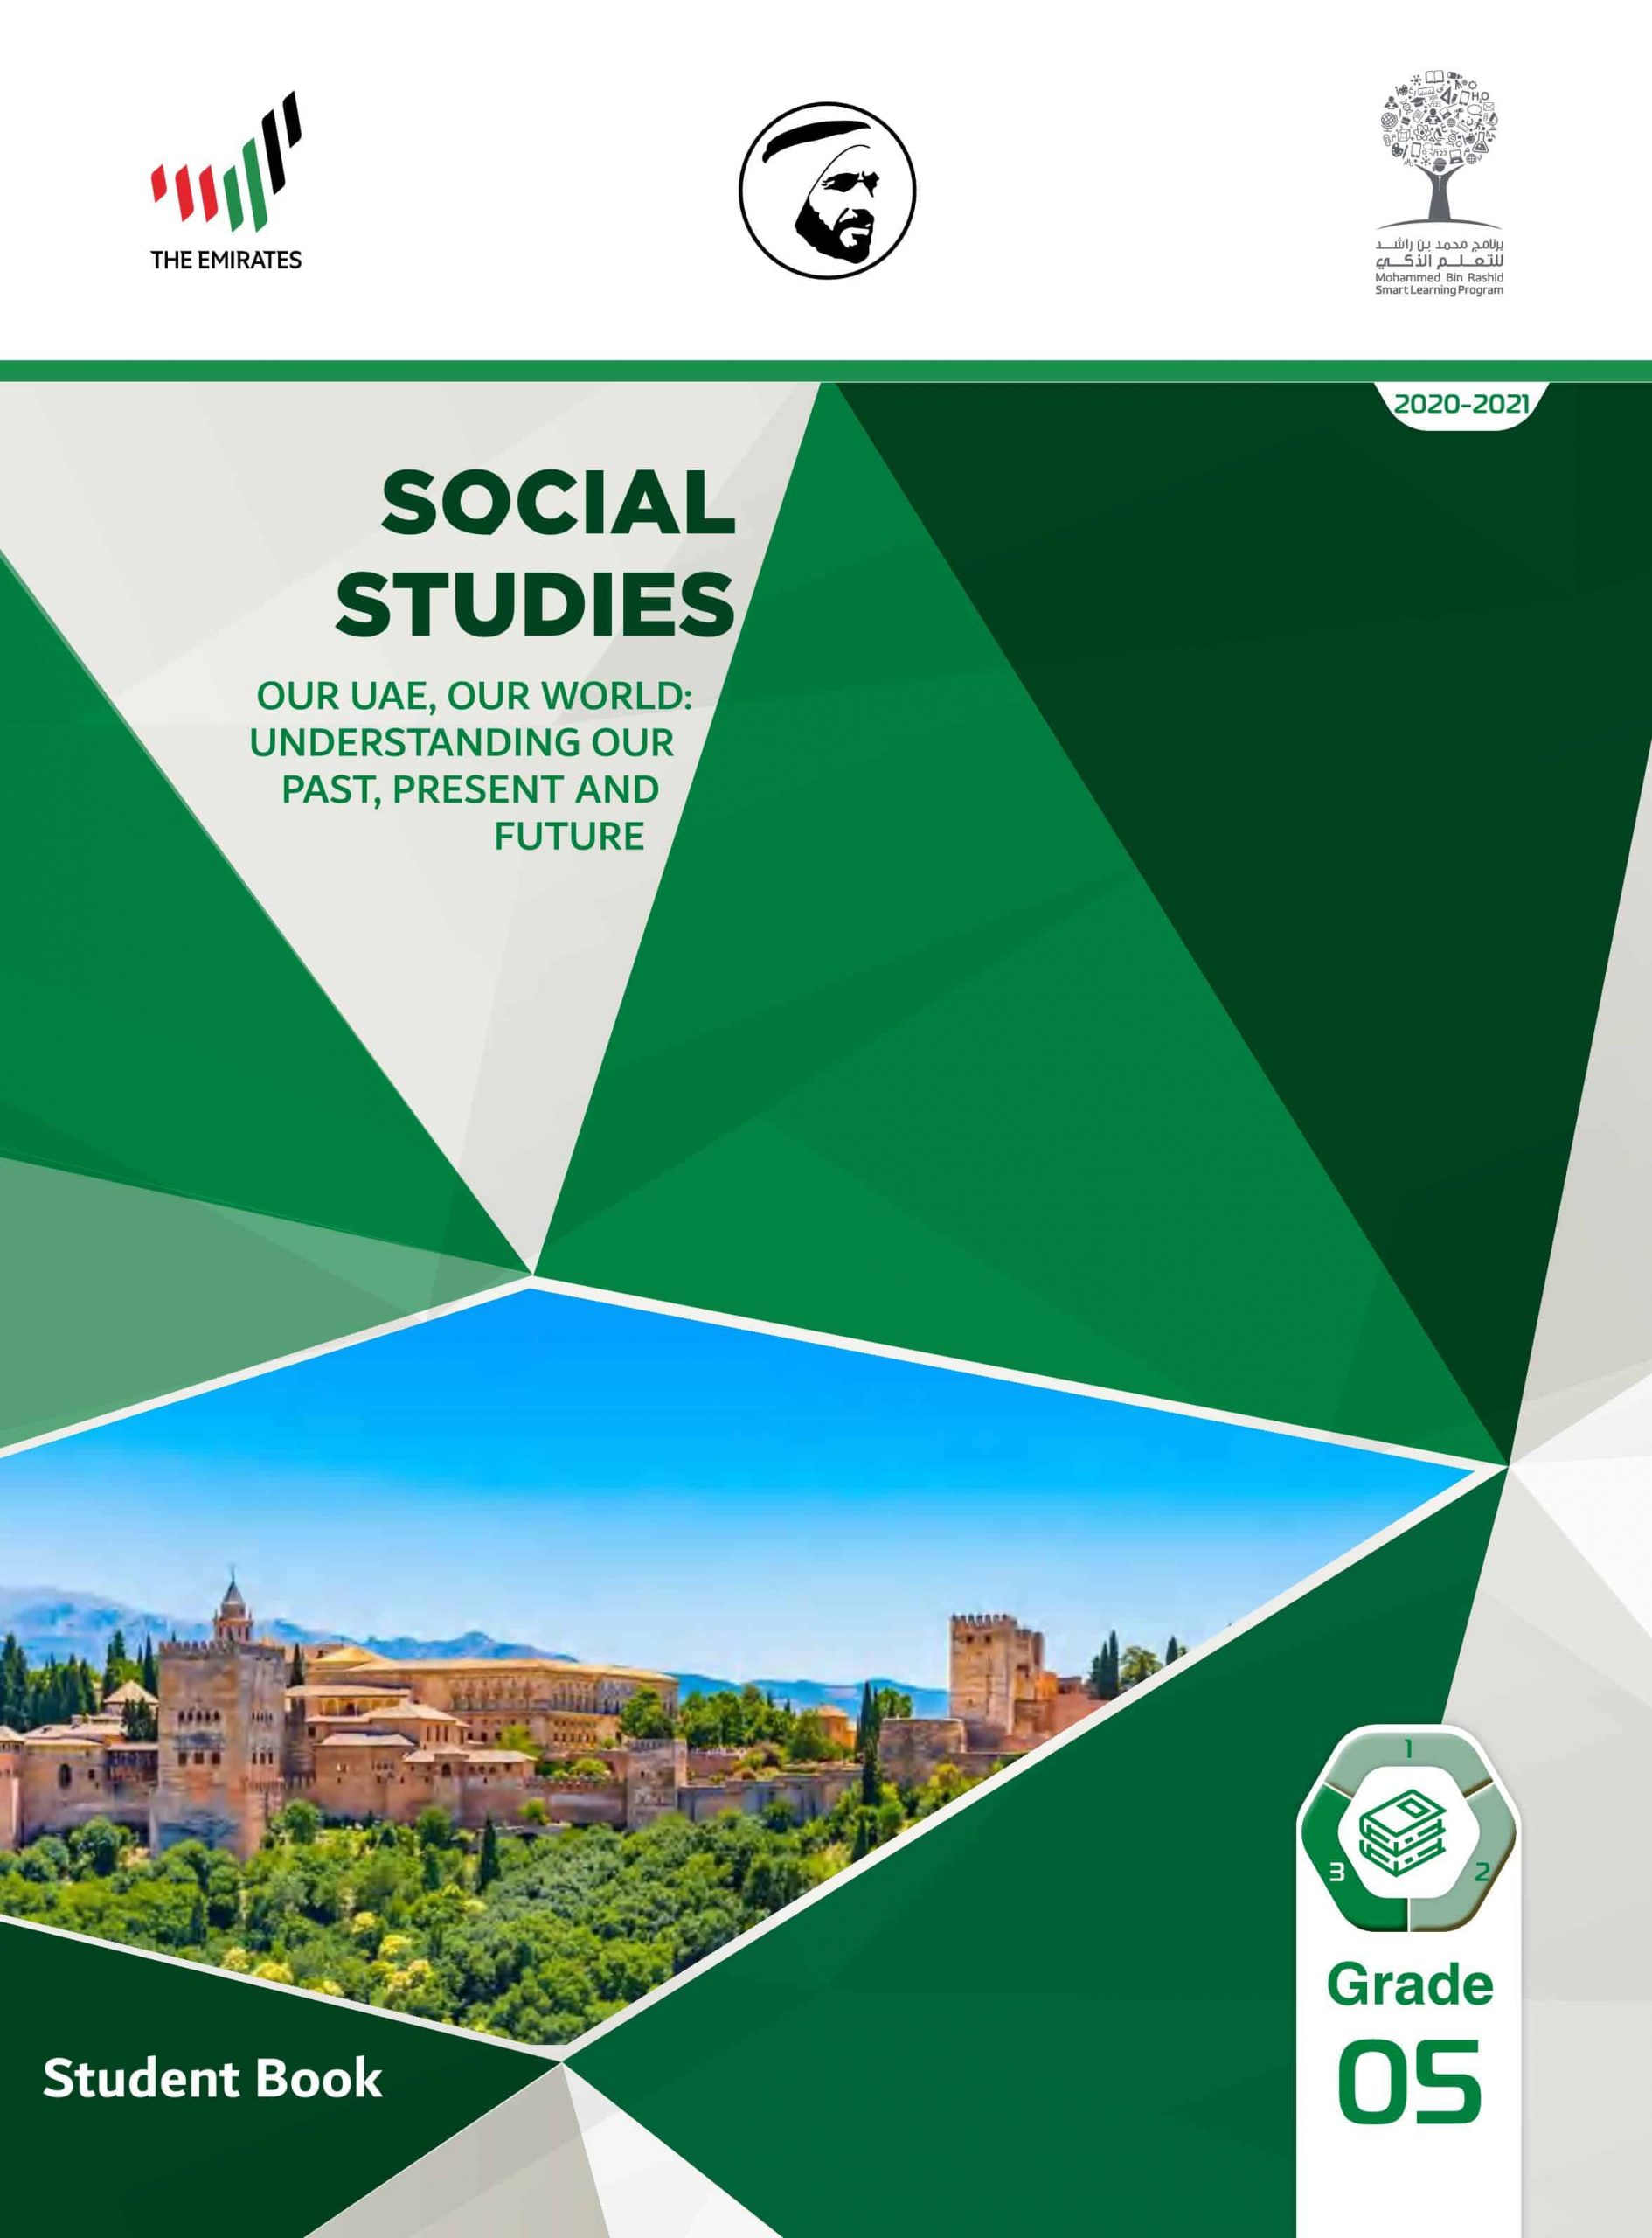 كتاب الطالب بالإنجليزي الفصل الدراسي الثالث 2020-2021 الصف الخامس مادة الدراسات الإجتماعية والتربية الوطنية 